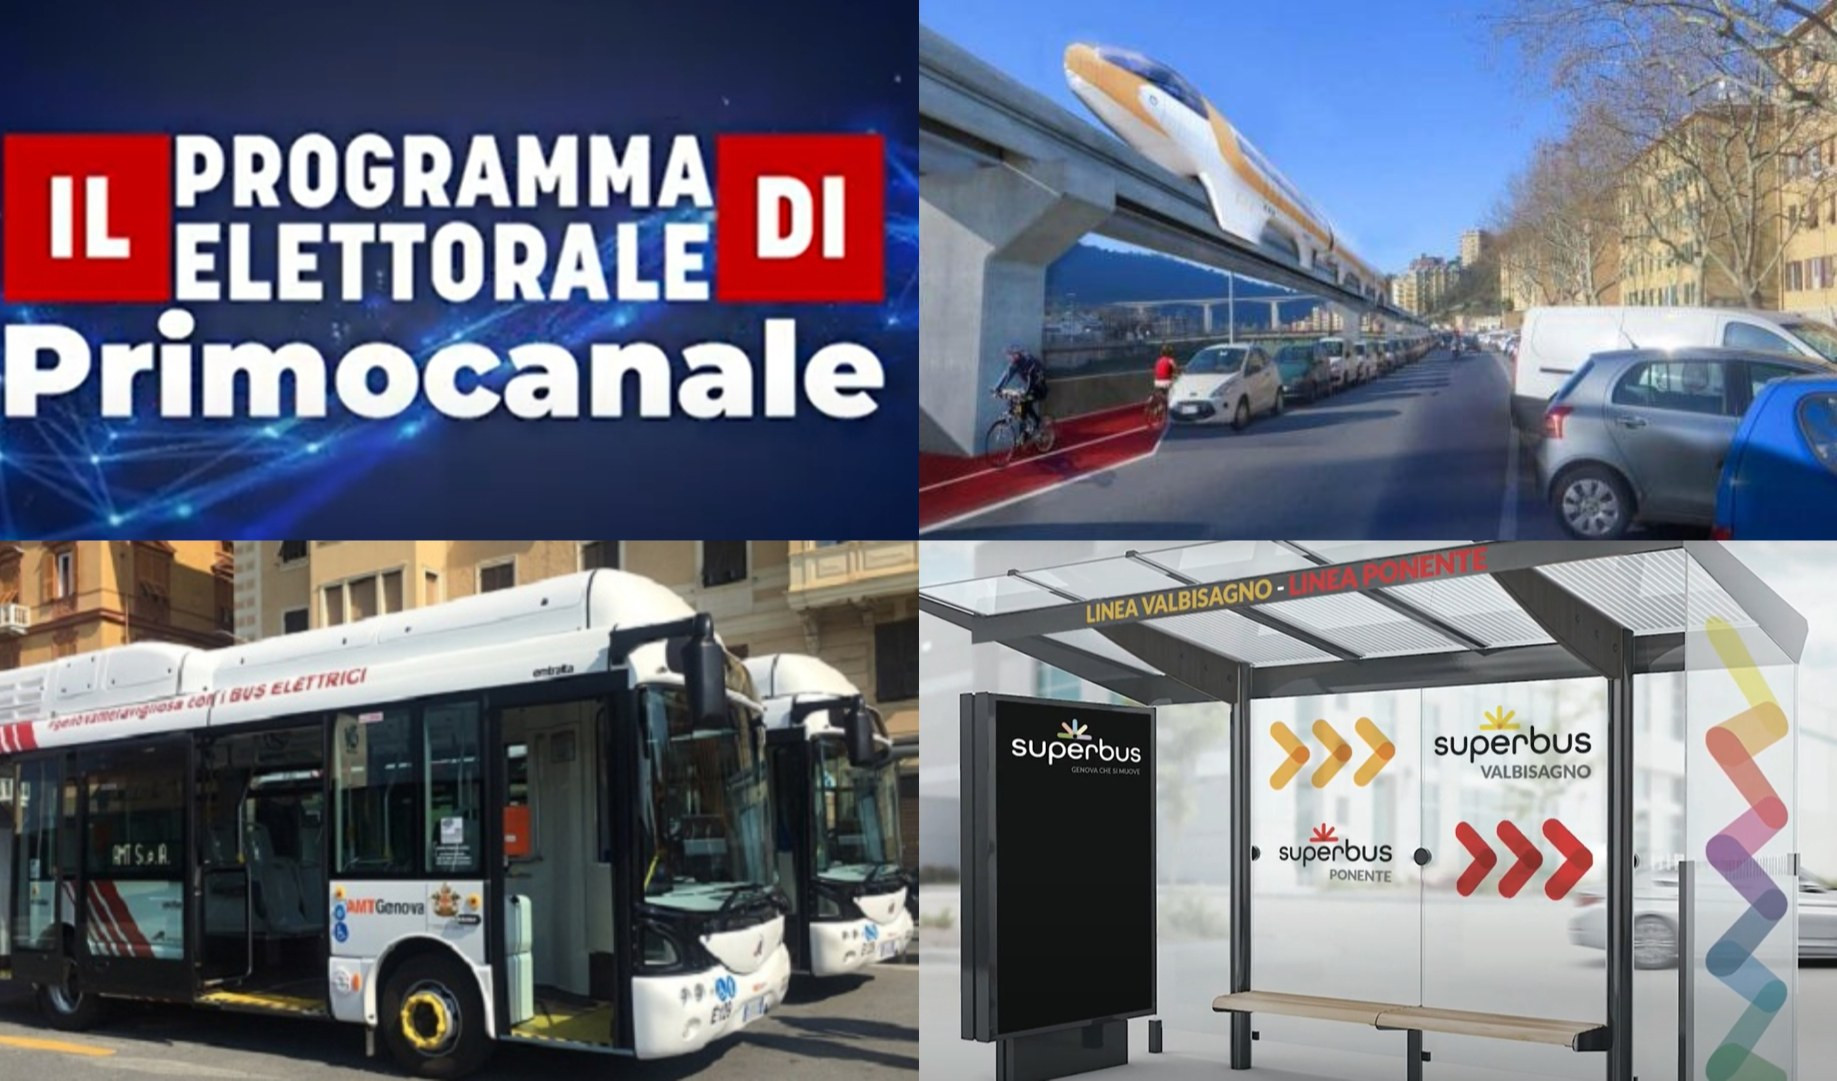 Il Programma elettorale di Primocanale - Il futuro del trasporto pubblico a Genova (puntata 2)